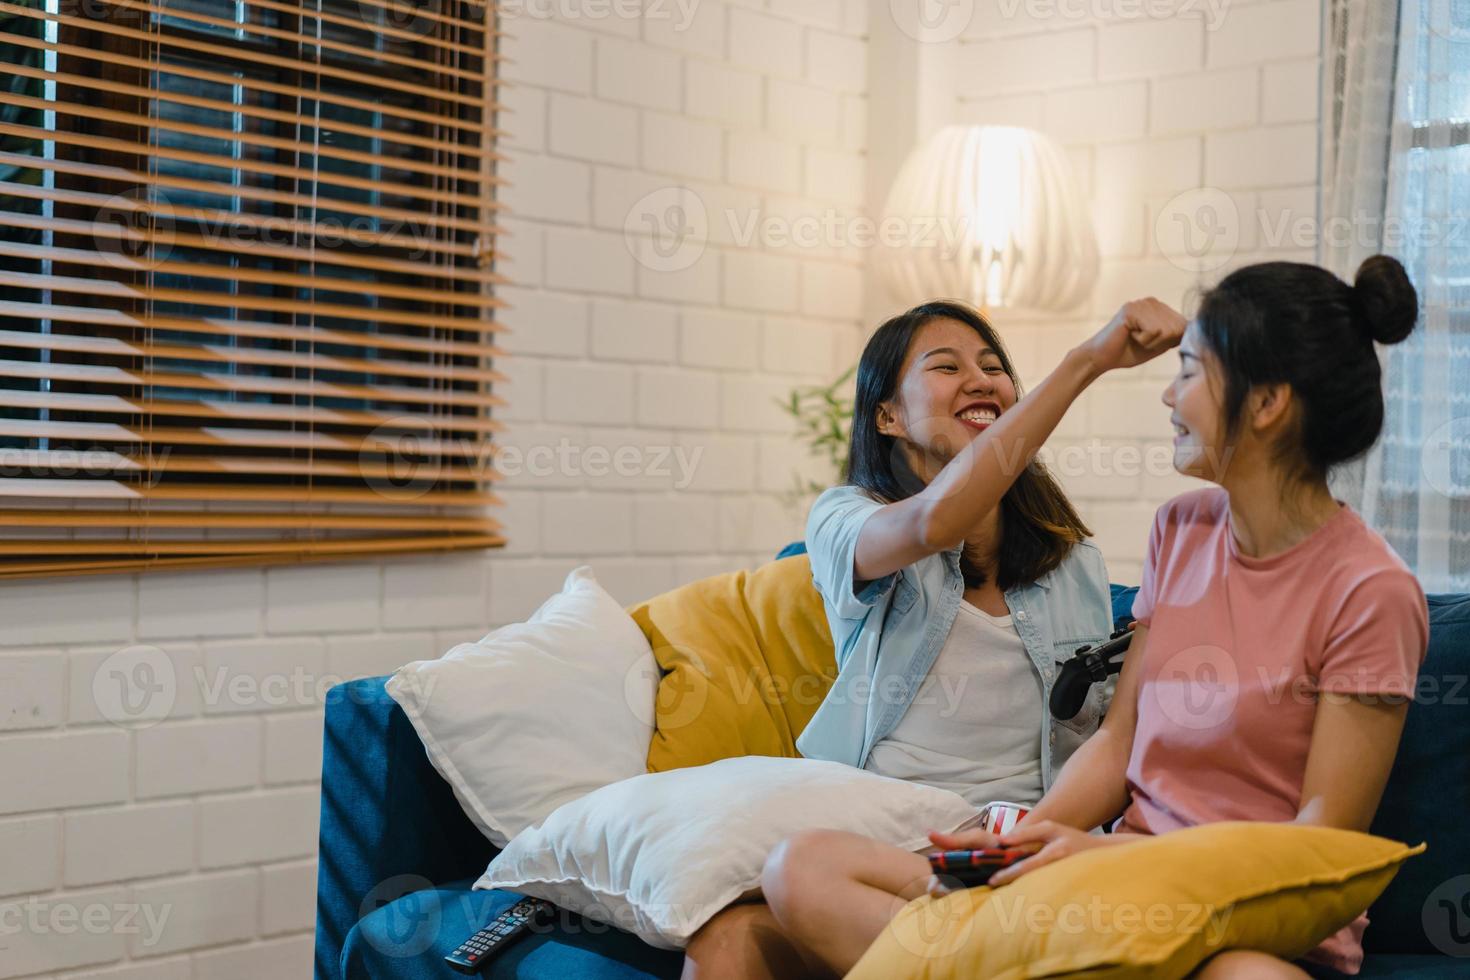 le coppie di donne lesbiche lgbt giocano a casa, femmine asiatiche usando il joystick che hanno un momento felice divertente insieme sul divano nel soggiorno di notte. giovane tifoso amante del calcio, celebra il concetto di vacanza. foto